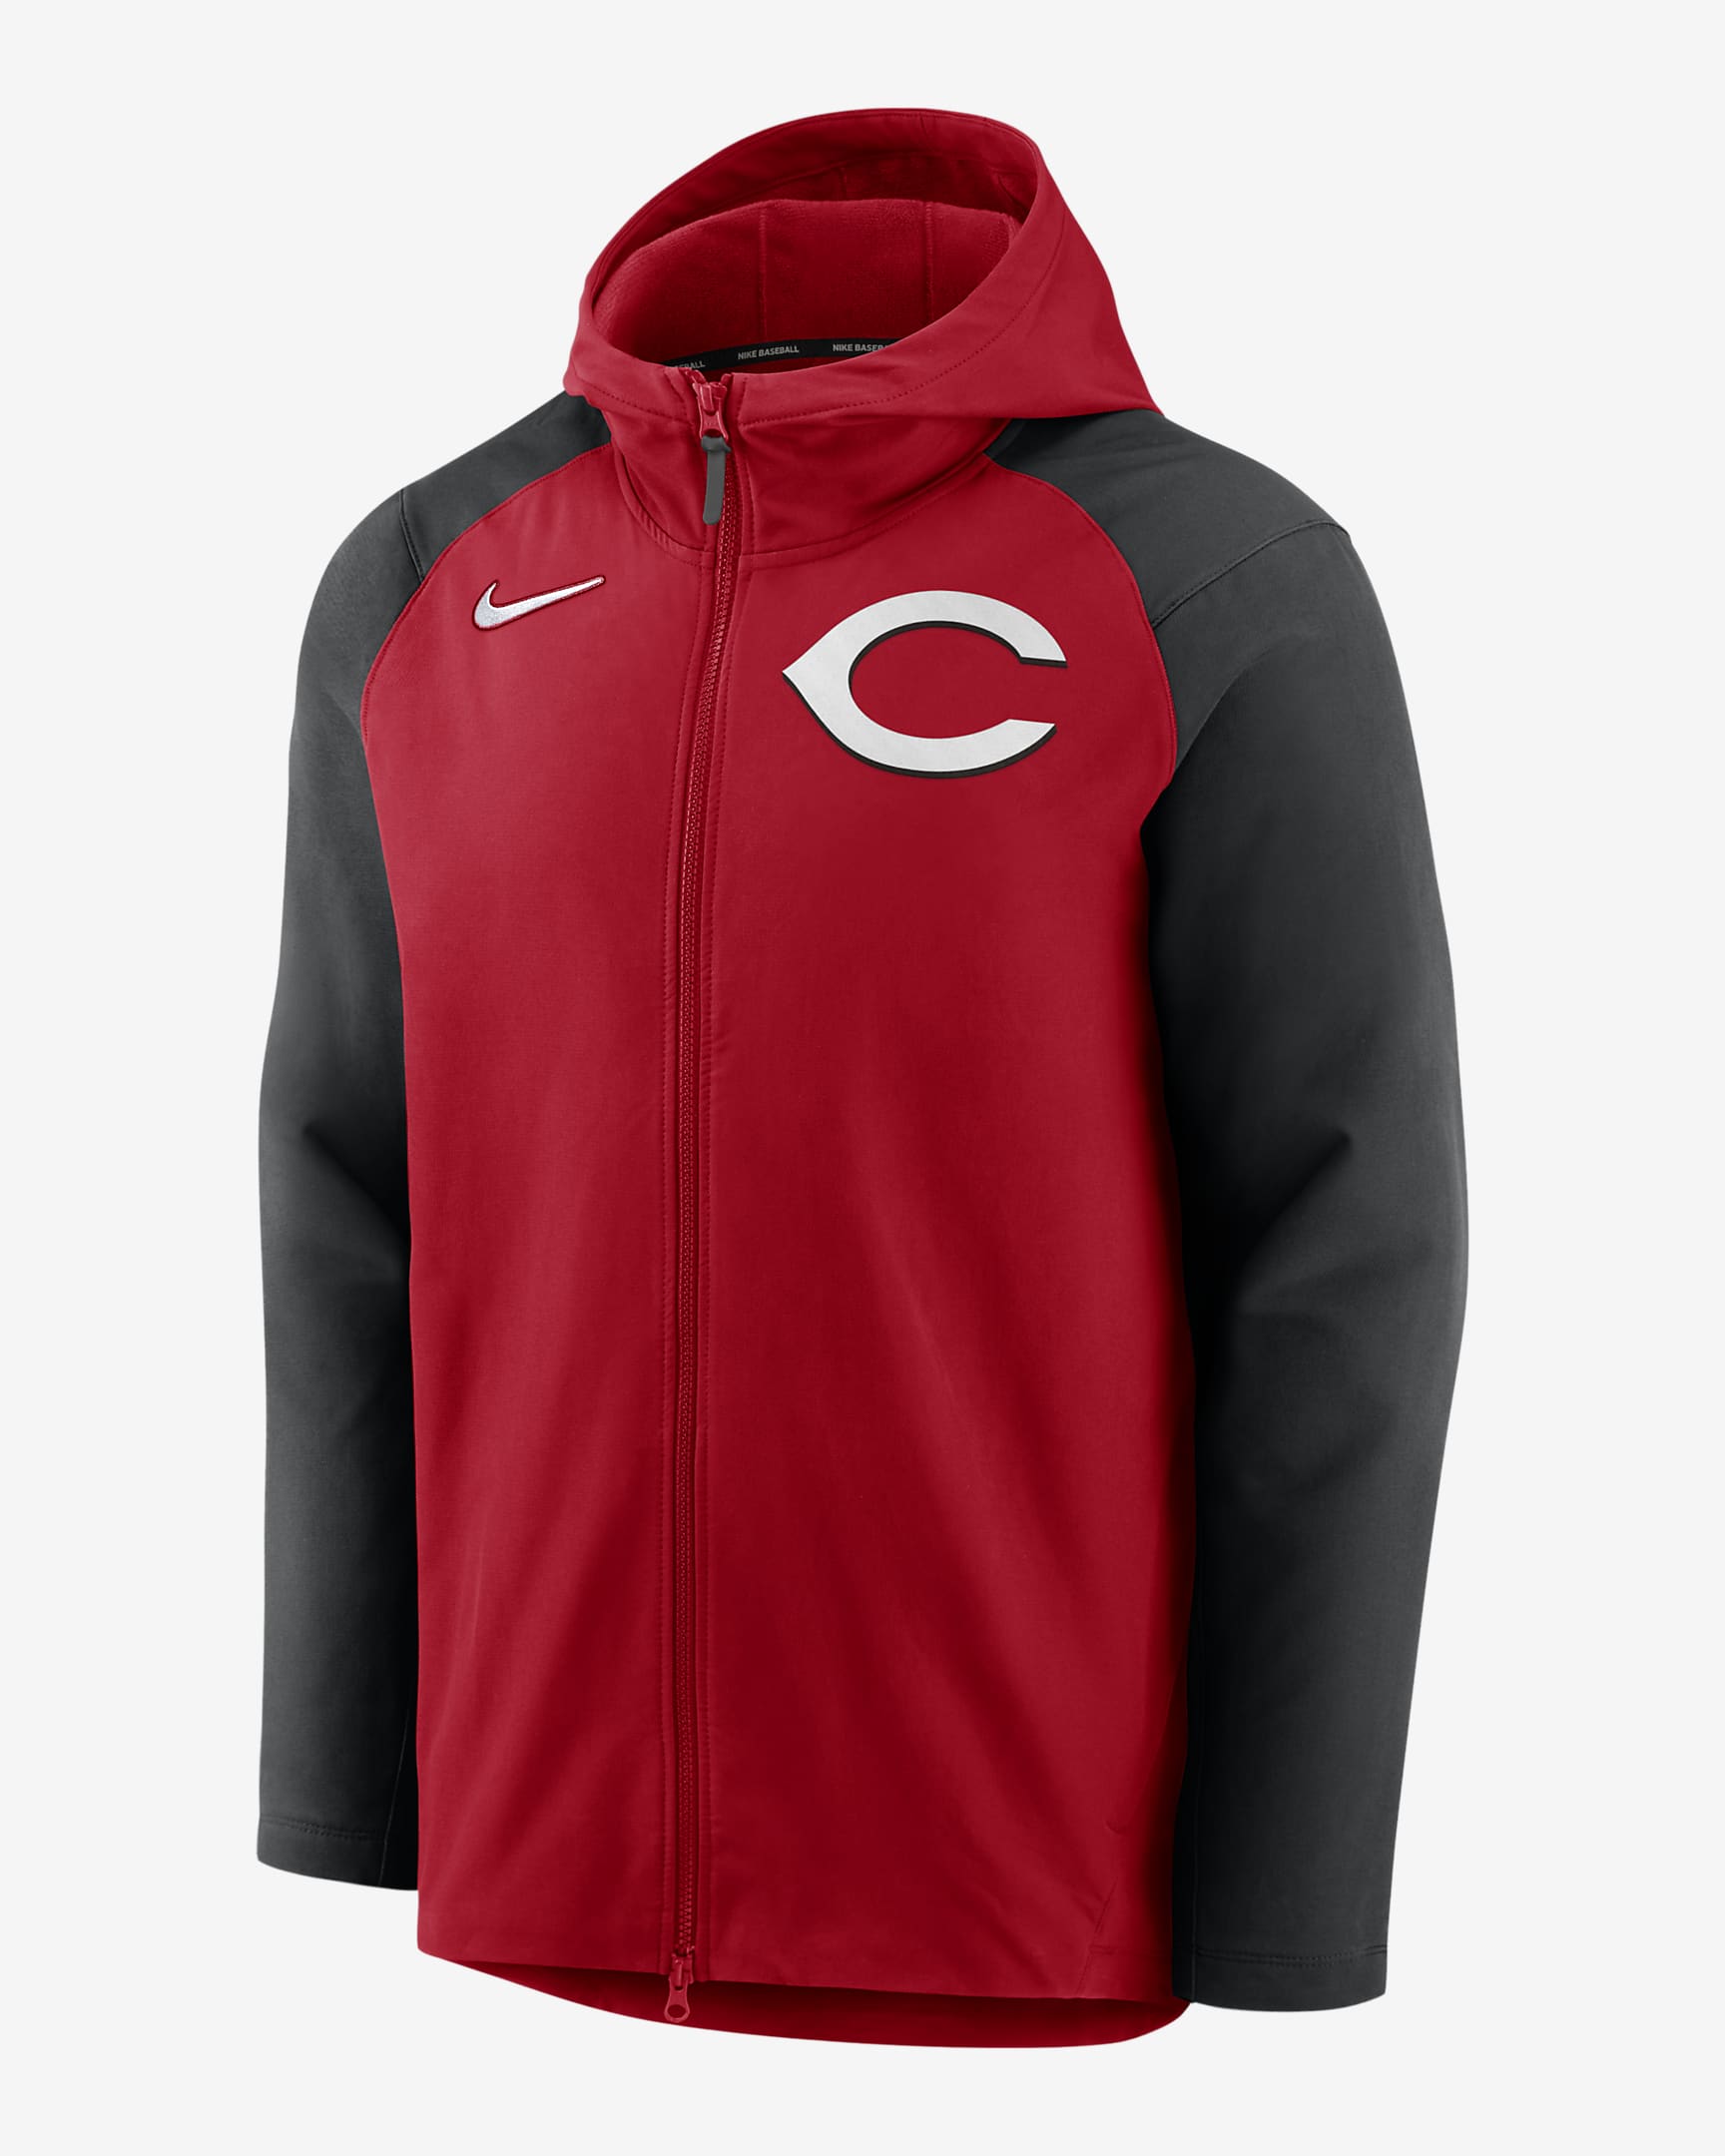 Nike Therma Player (MLB Cincinnati Reds) Men's Full-Zip Jacket. Nike.com